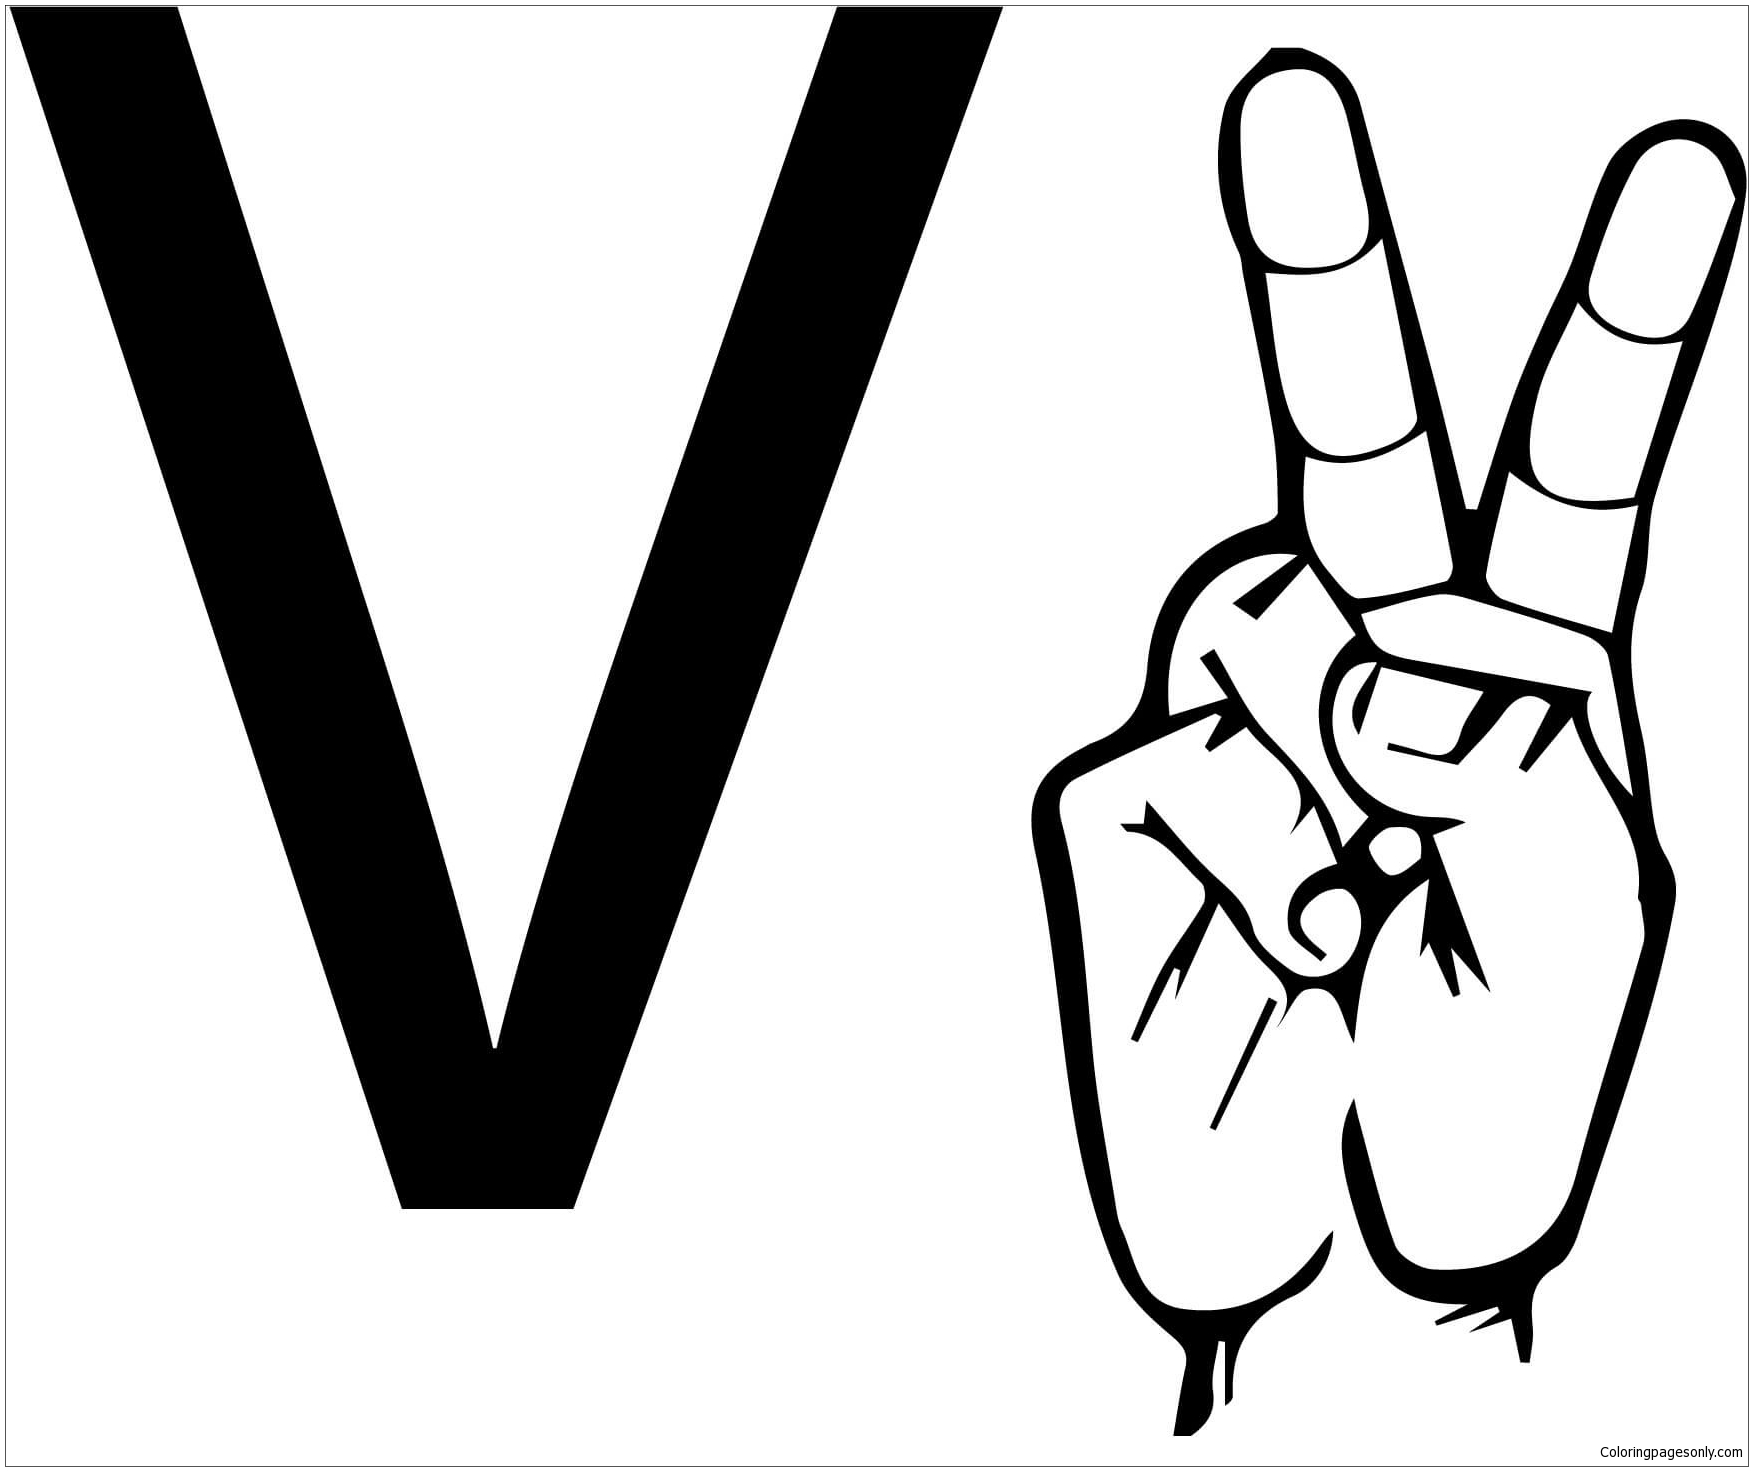 لغة الإشارة ASL حرف V من حرف V